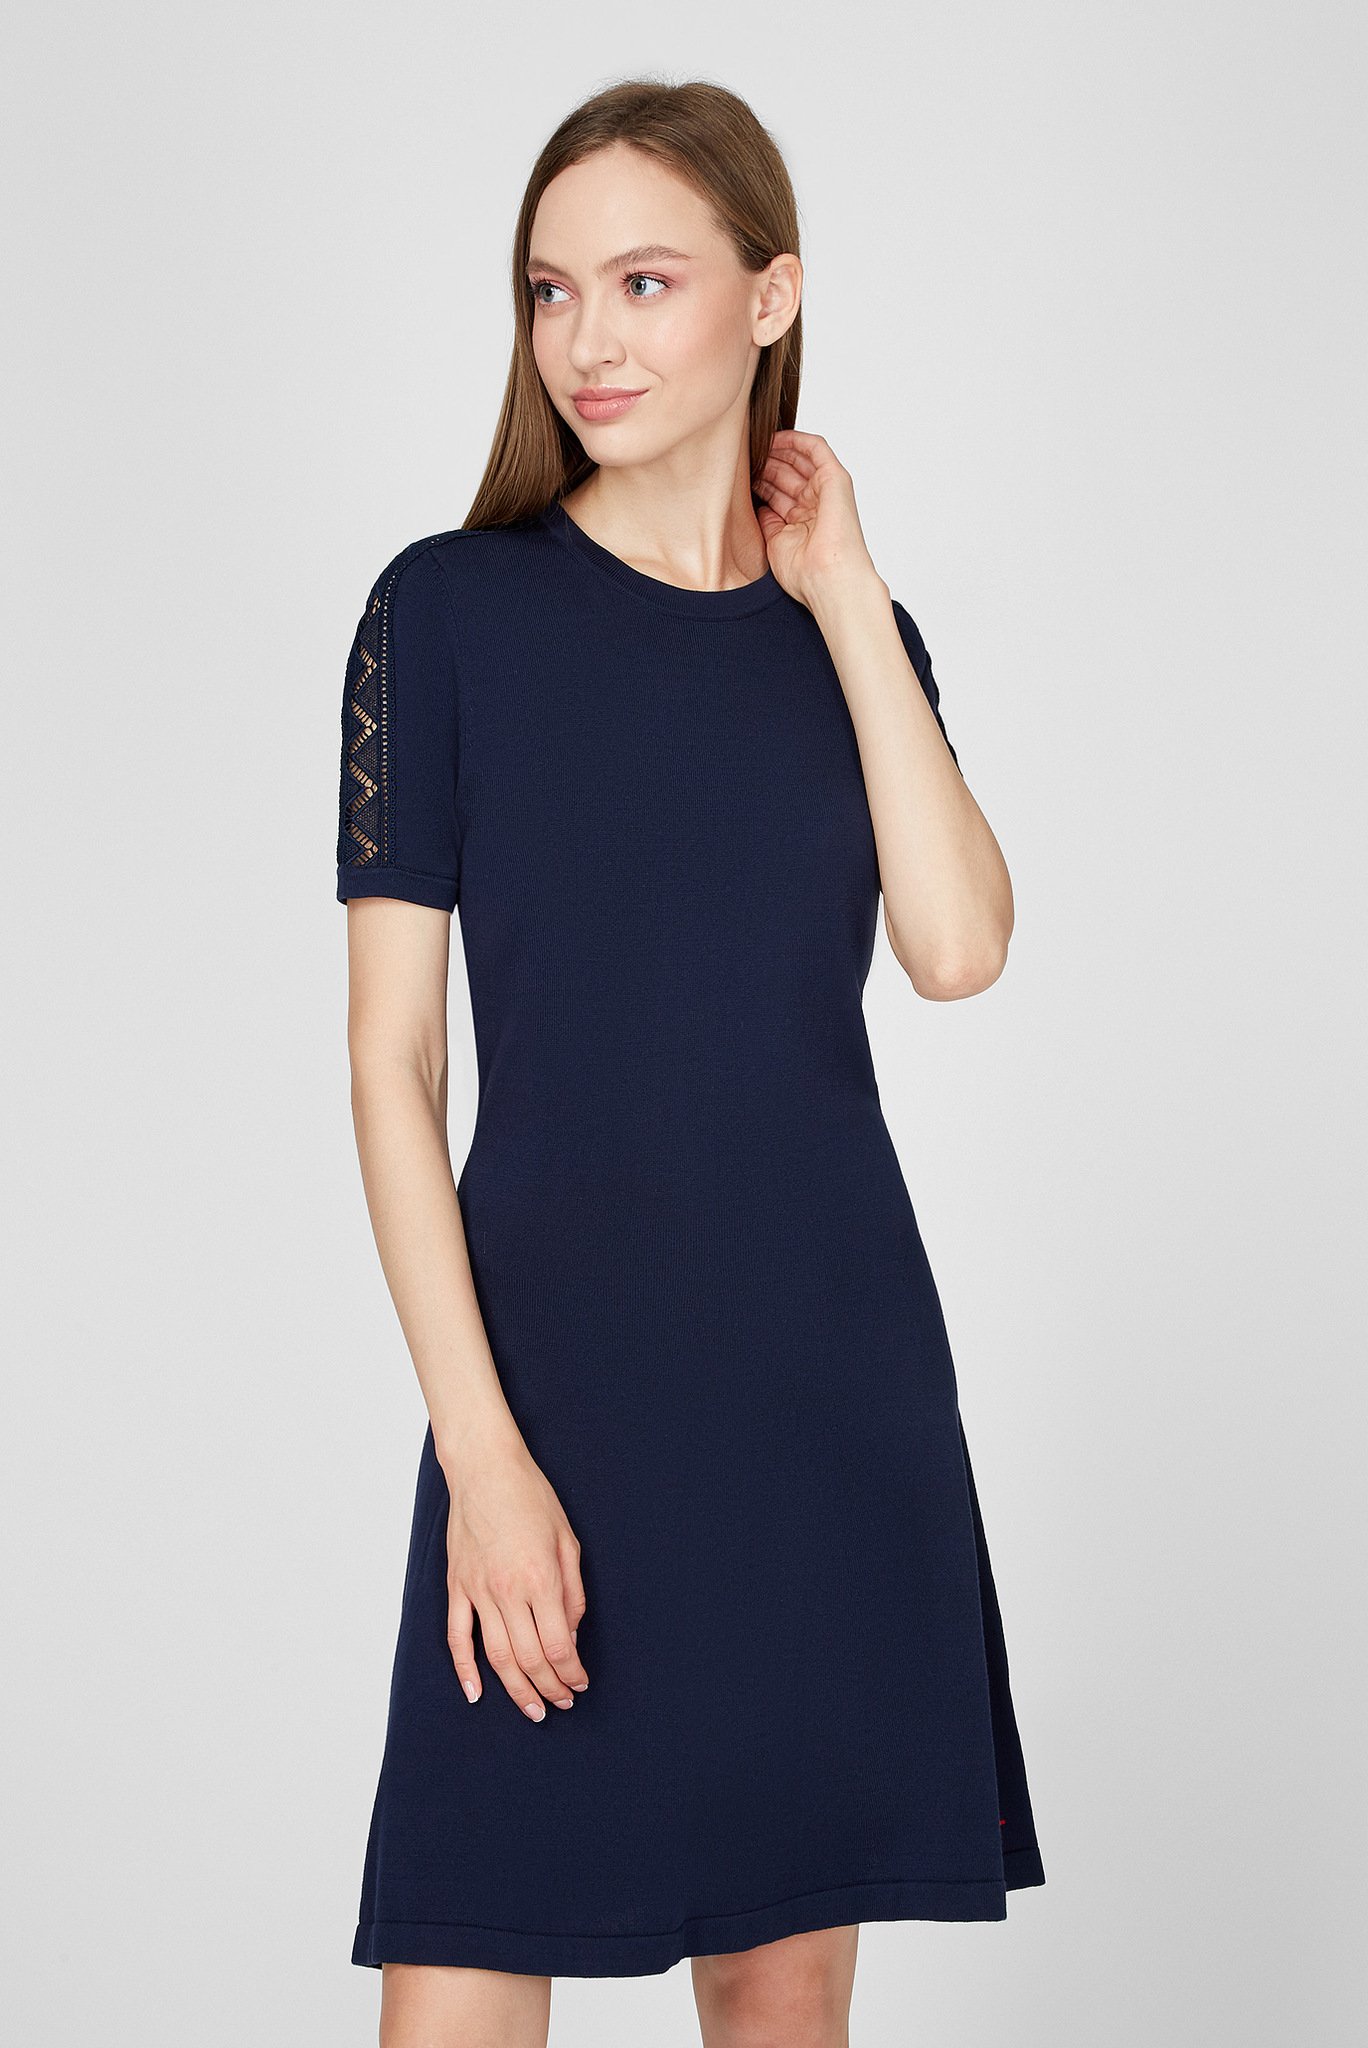 Женское темно-синее платье WIDRA C-NK 1